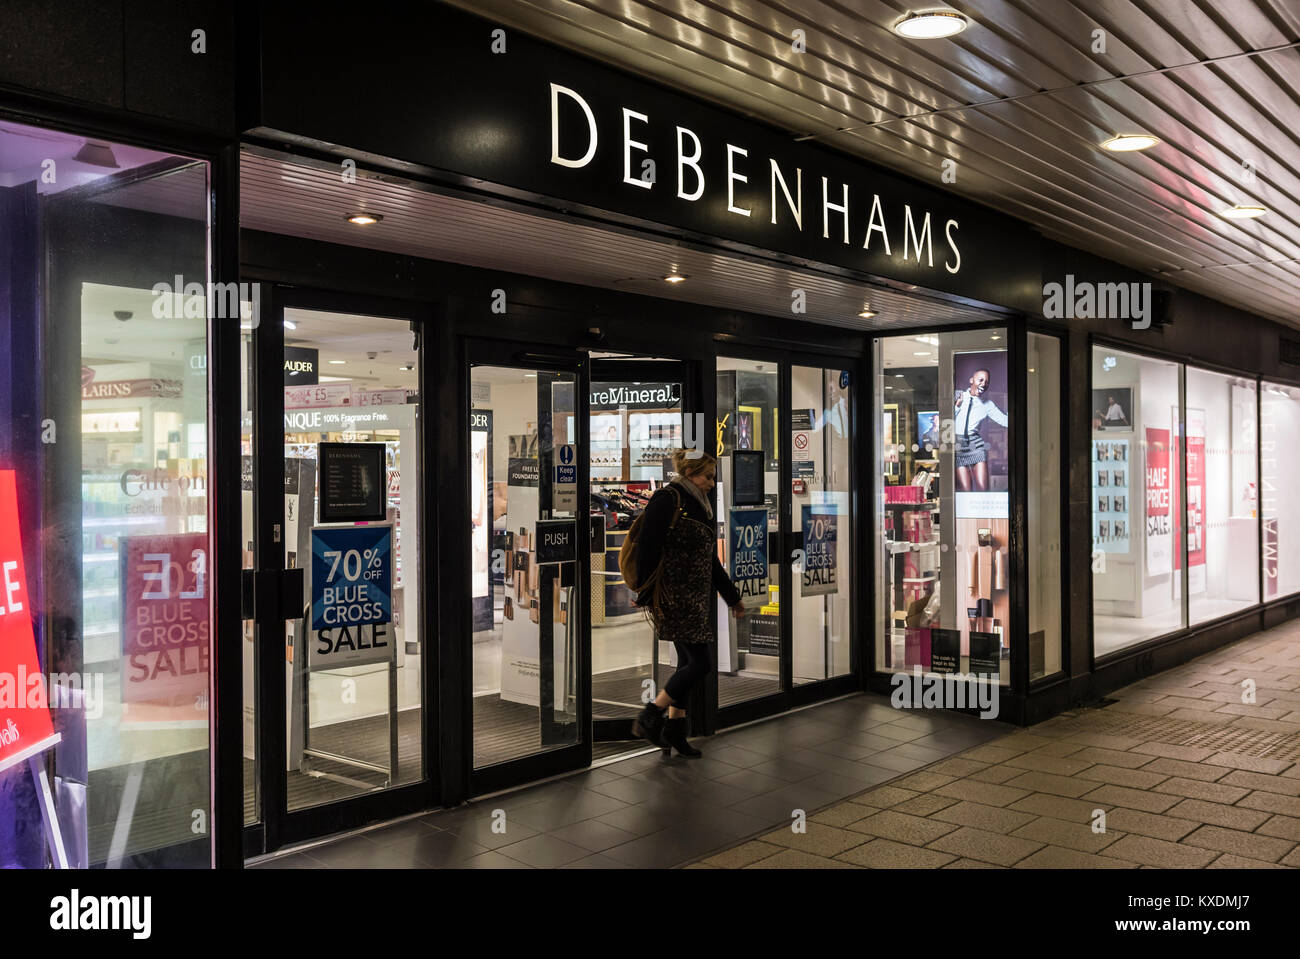 Boutique Debenhams/entrée ouverte après la tombée de la nuit à Worthing, West Sussex, Angleterre, Royaume-Uni. Magasin de vente au détail. Banque D'Images